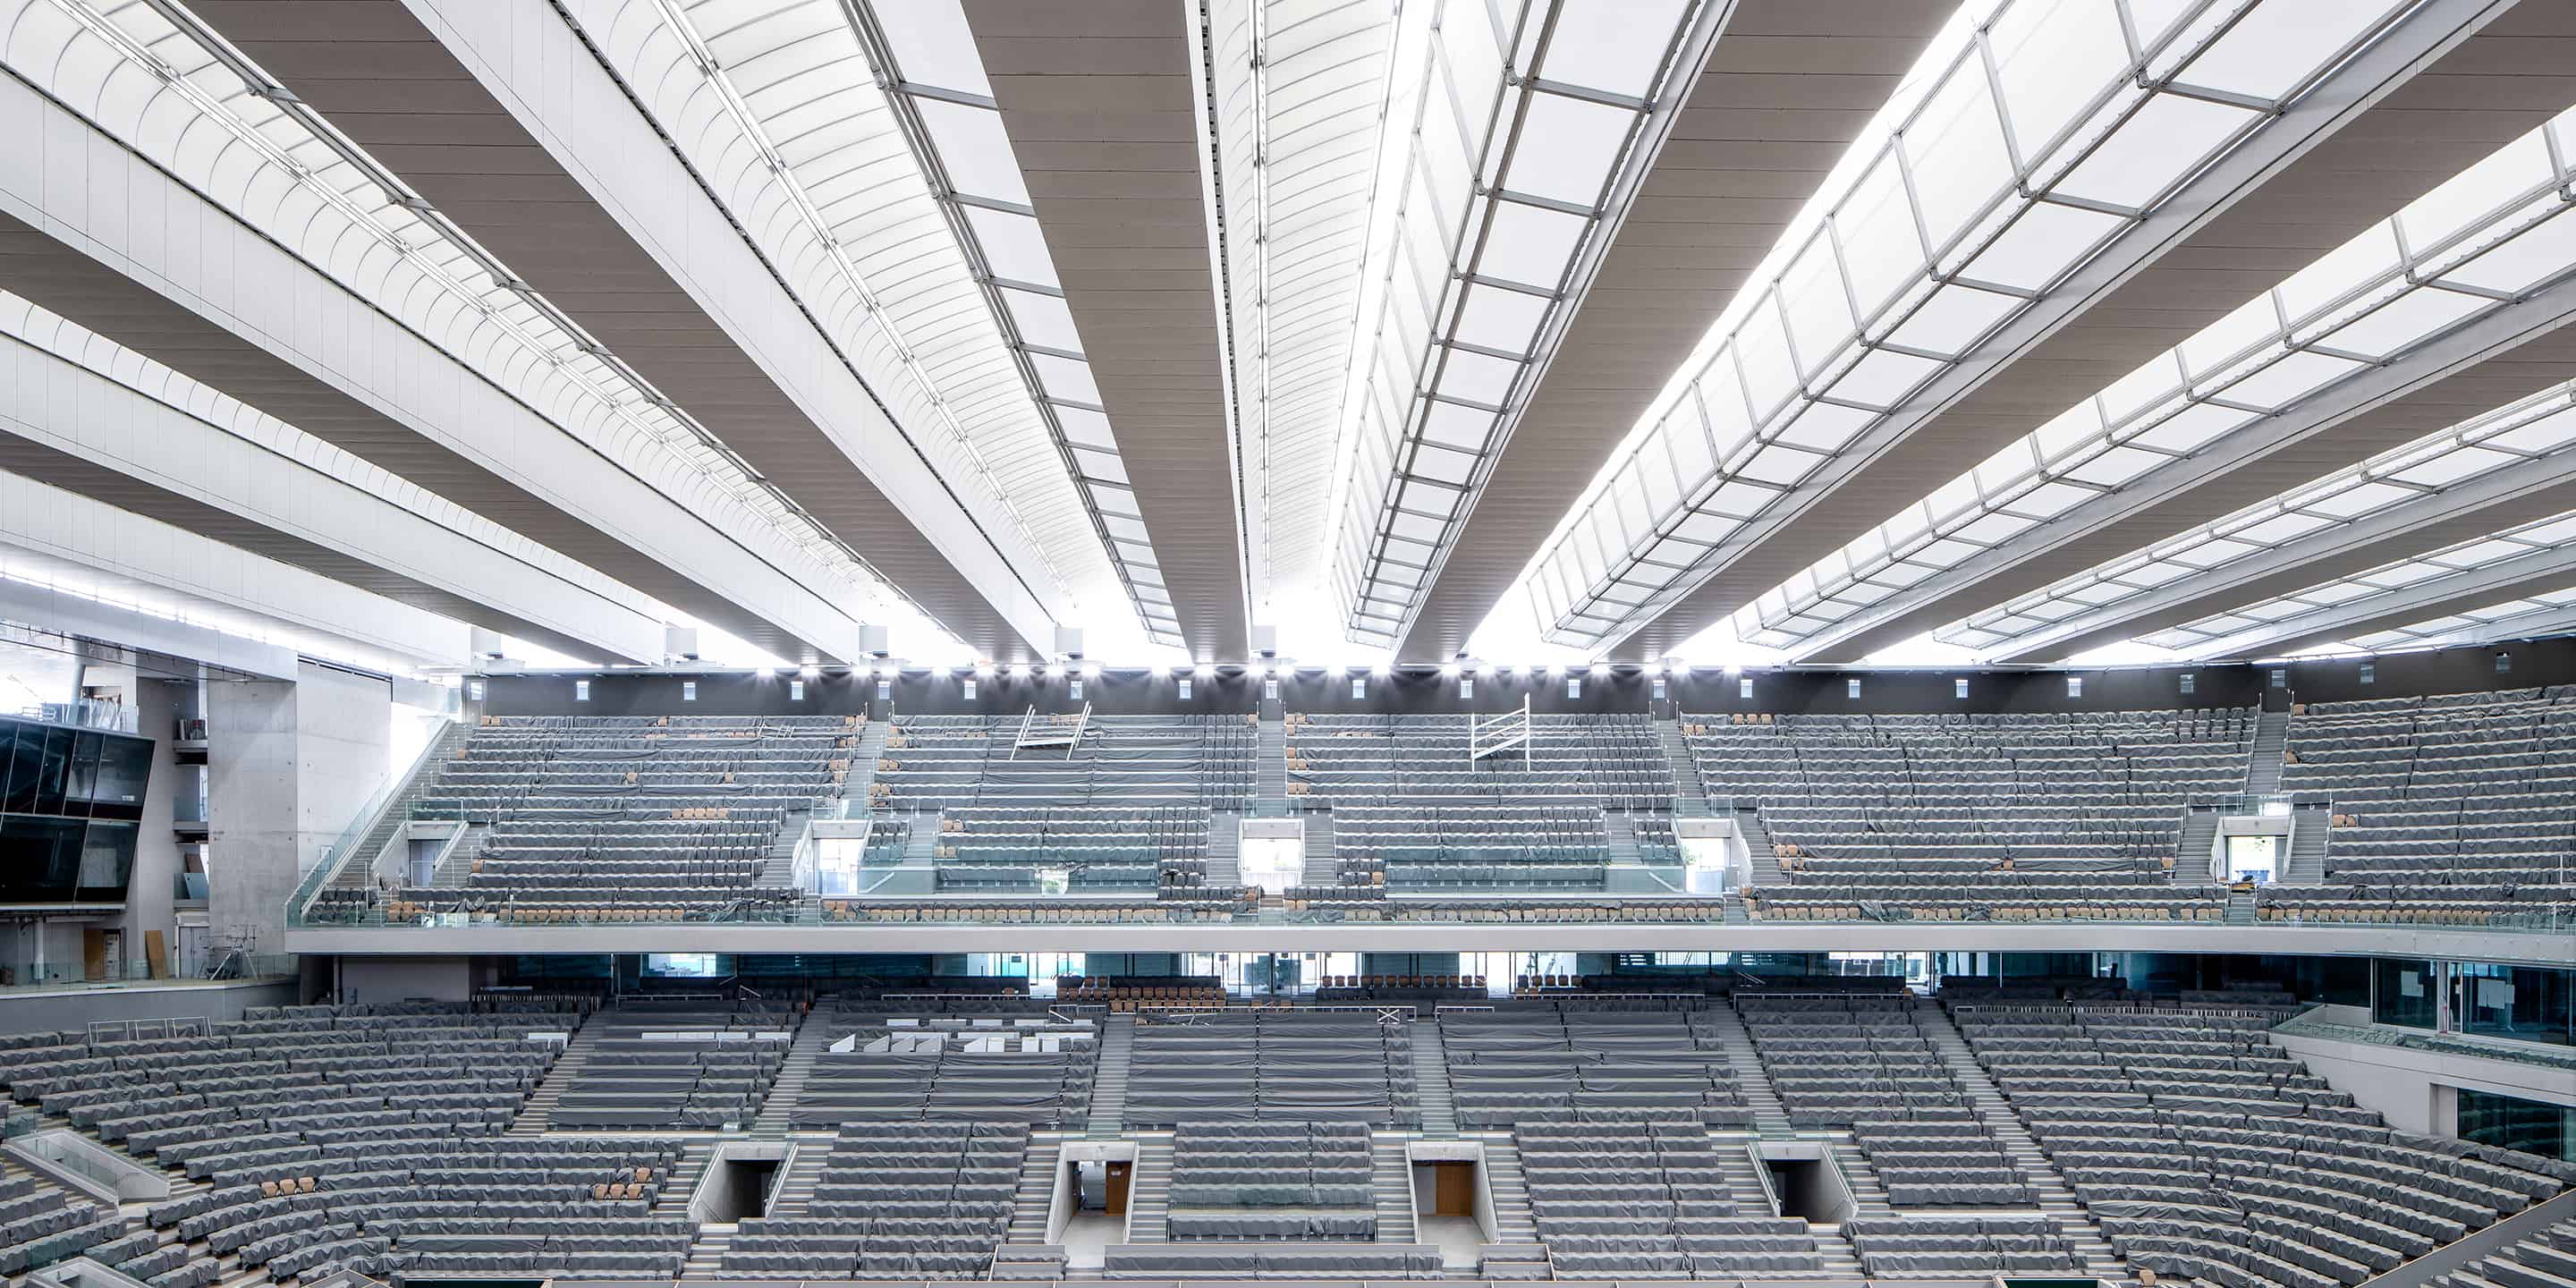 Toit mobile du court Central de Roland-Garros - DVVD